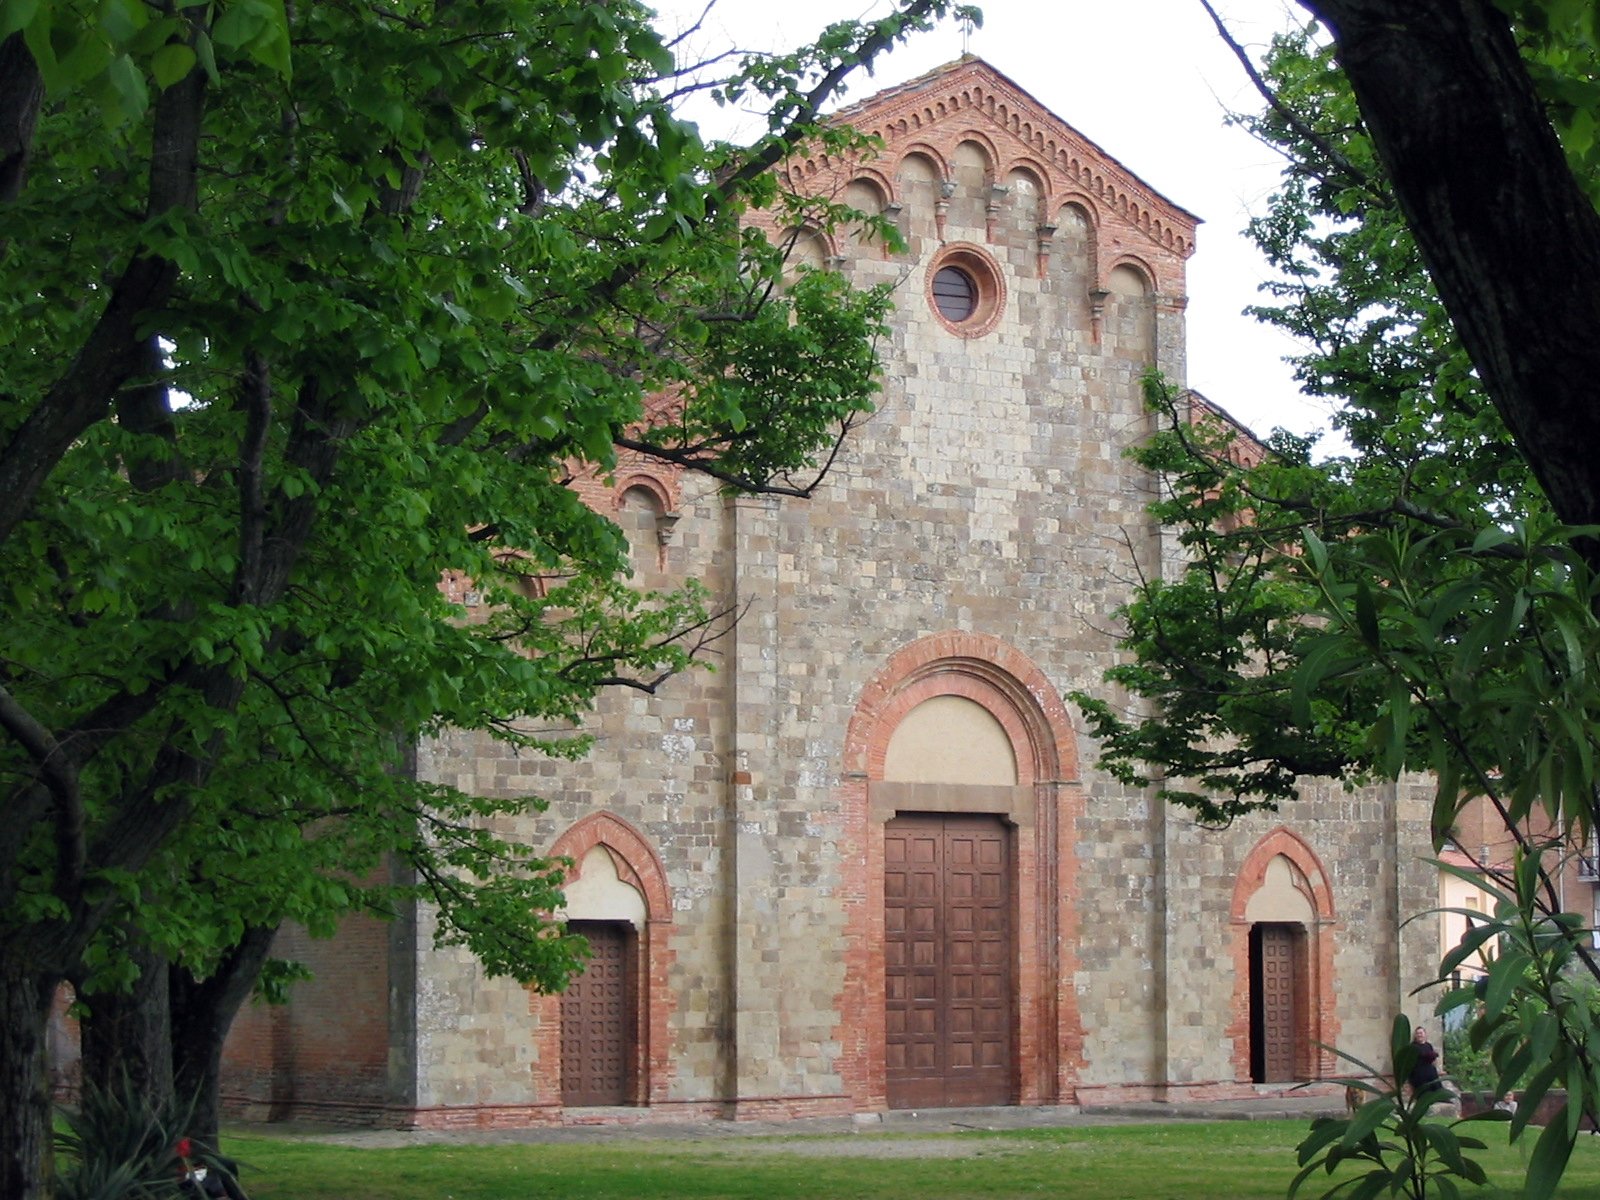 Pieve di San Martino in Palaia